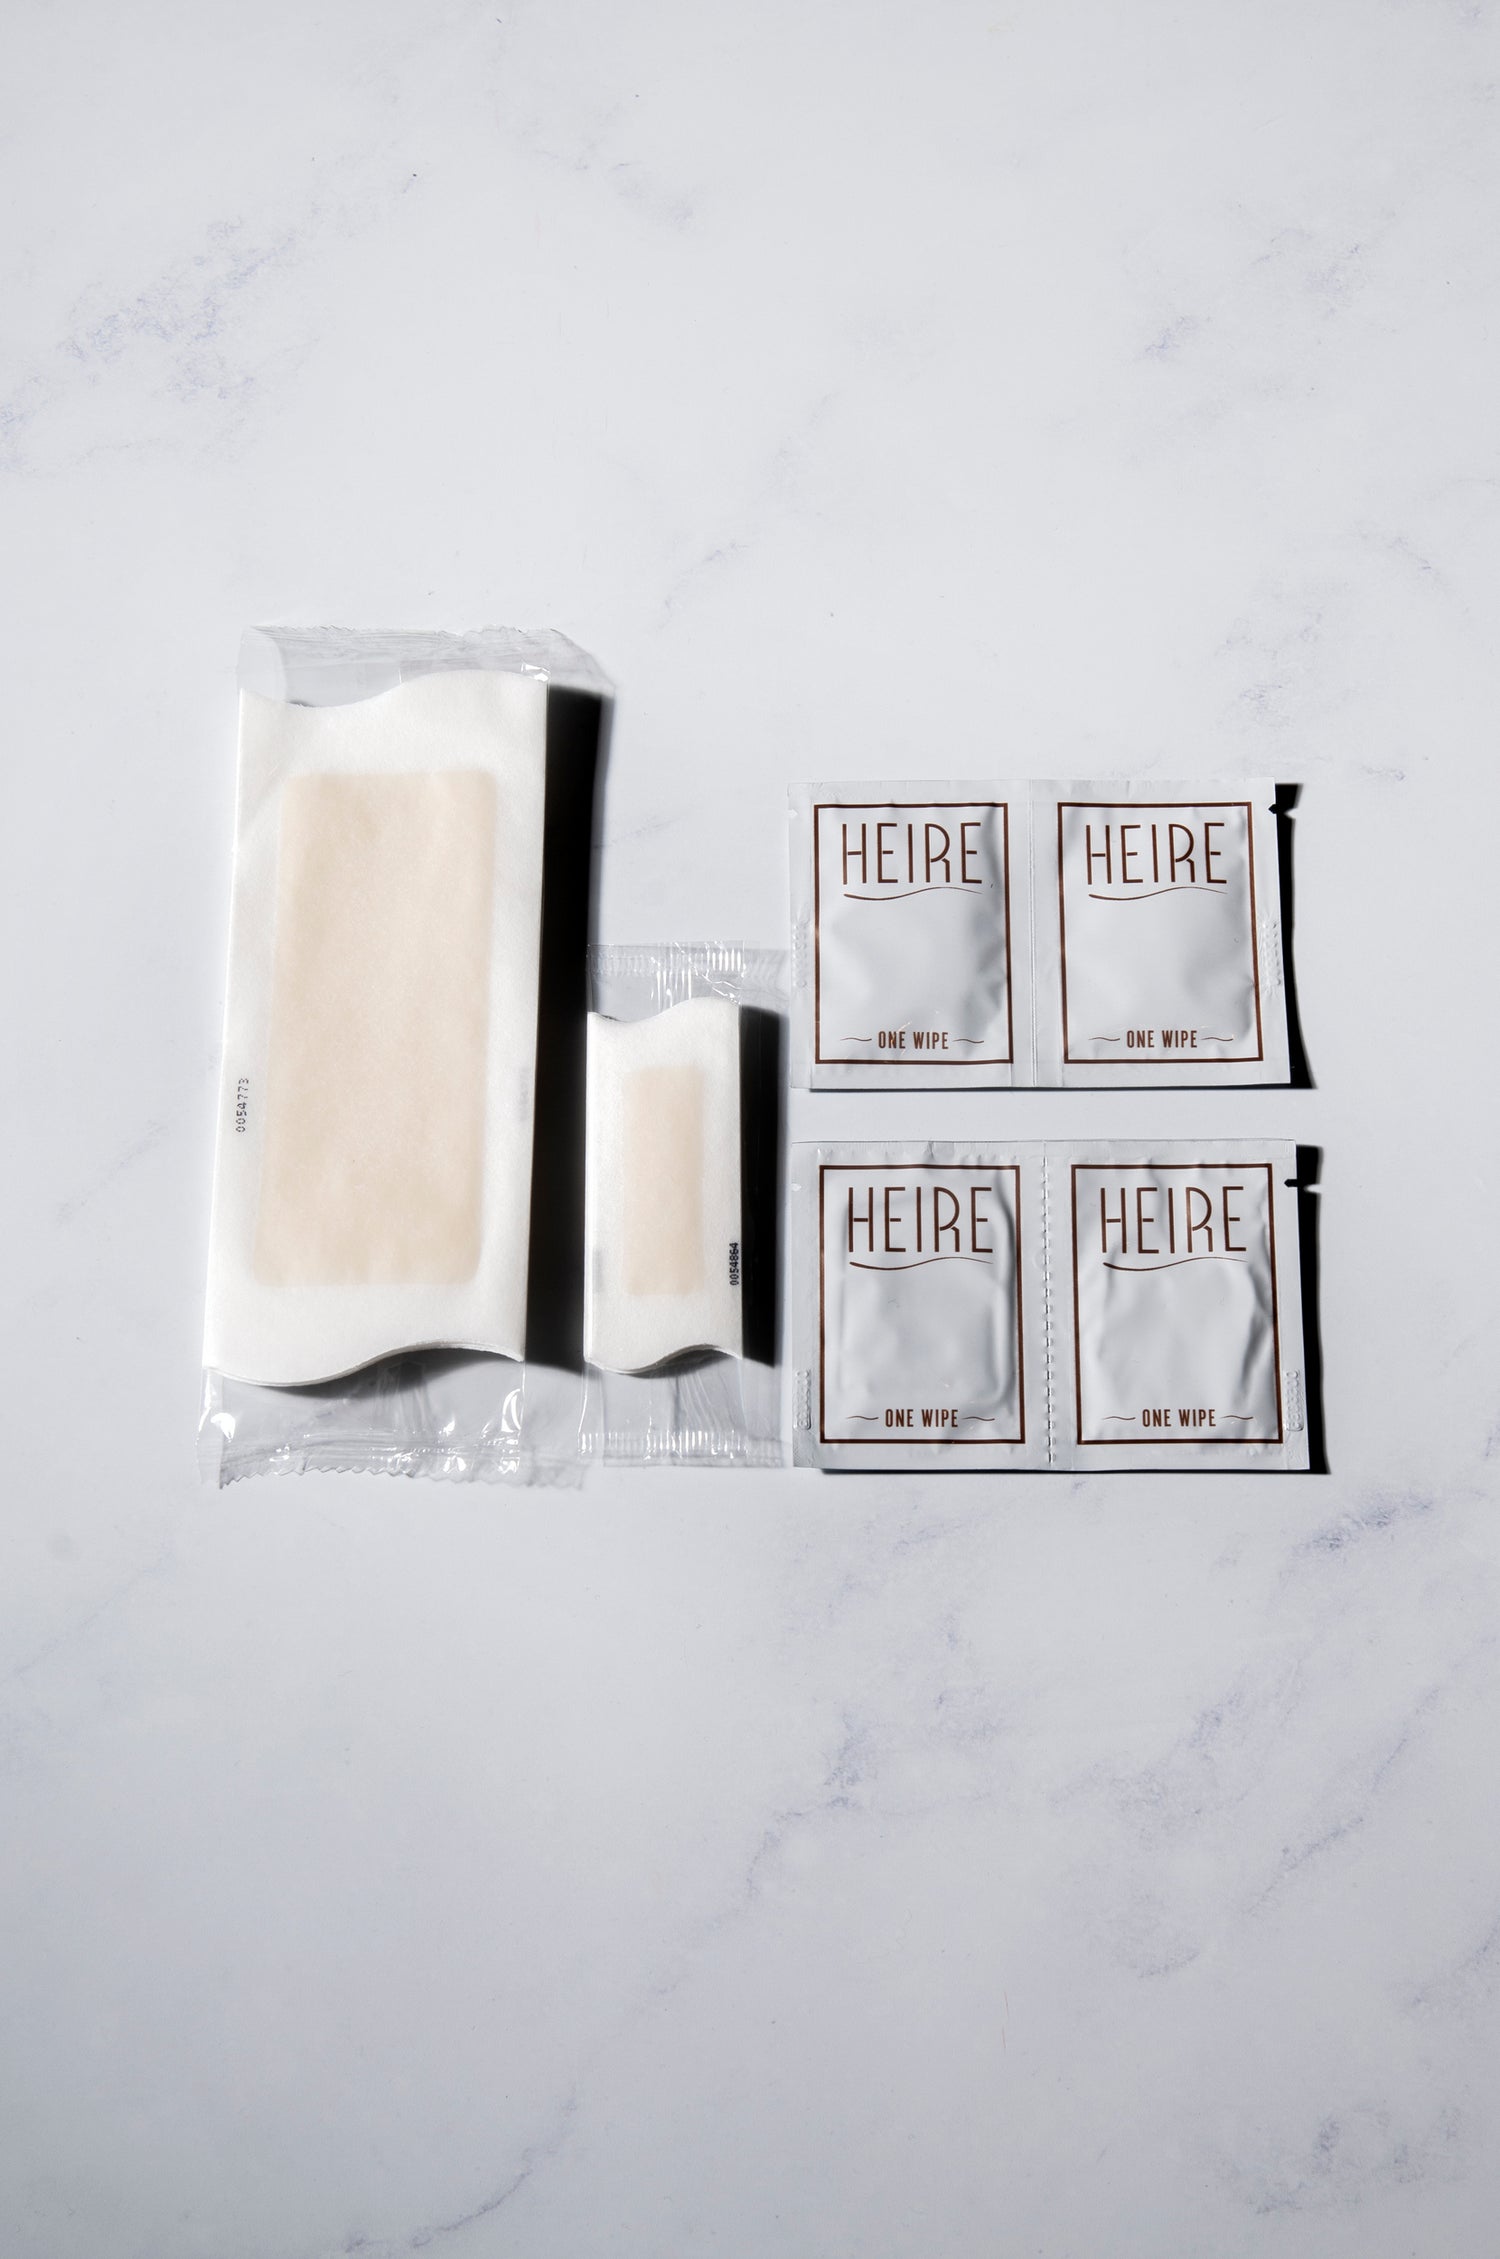 Heire Strip Wax Kit Packshot